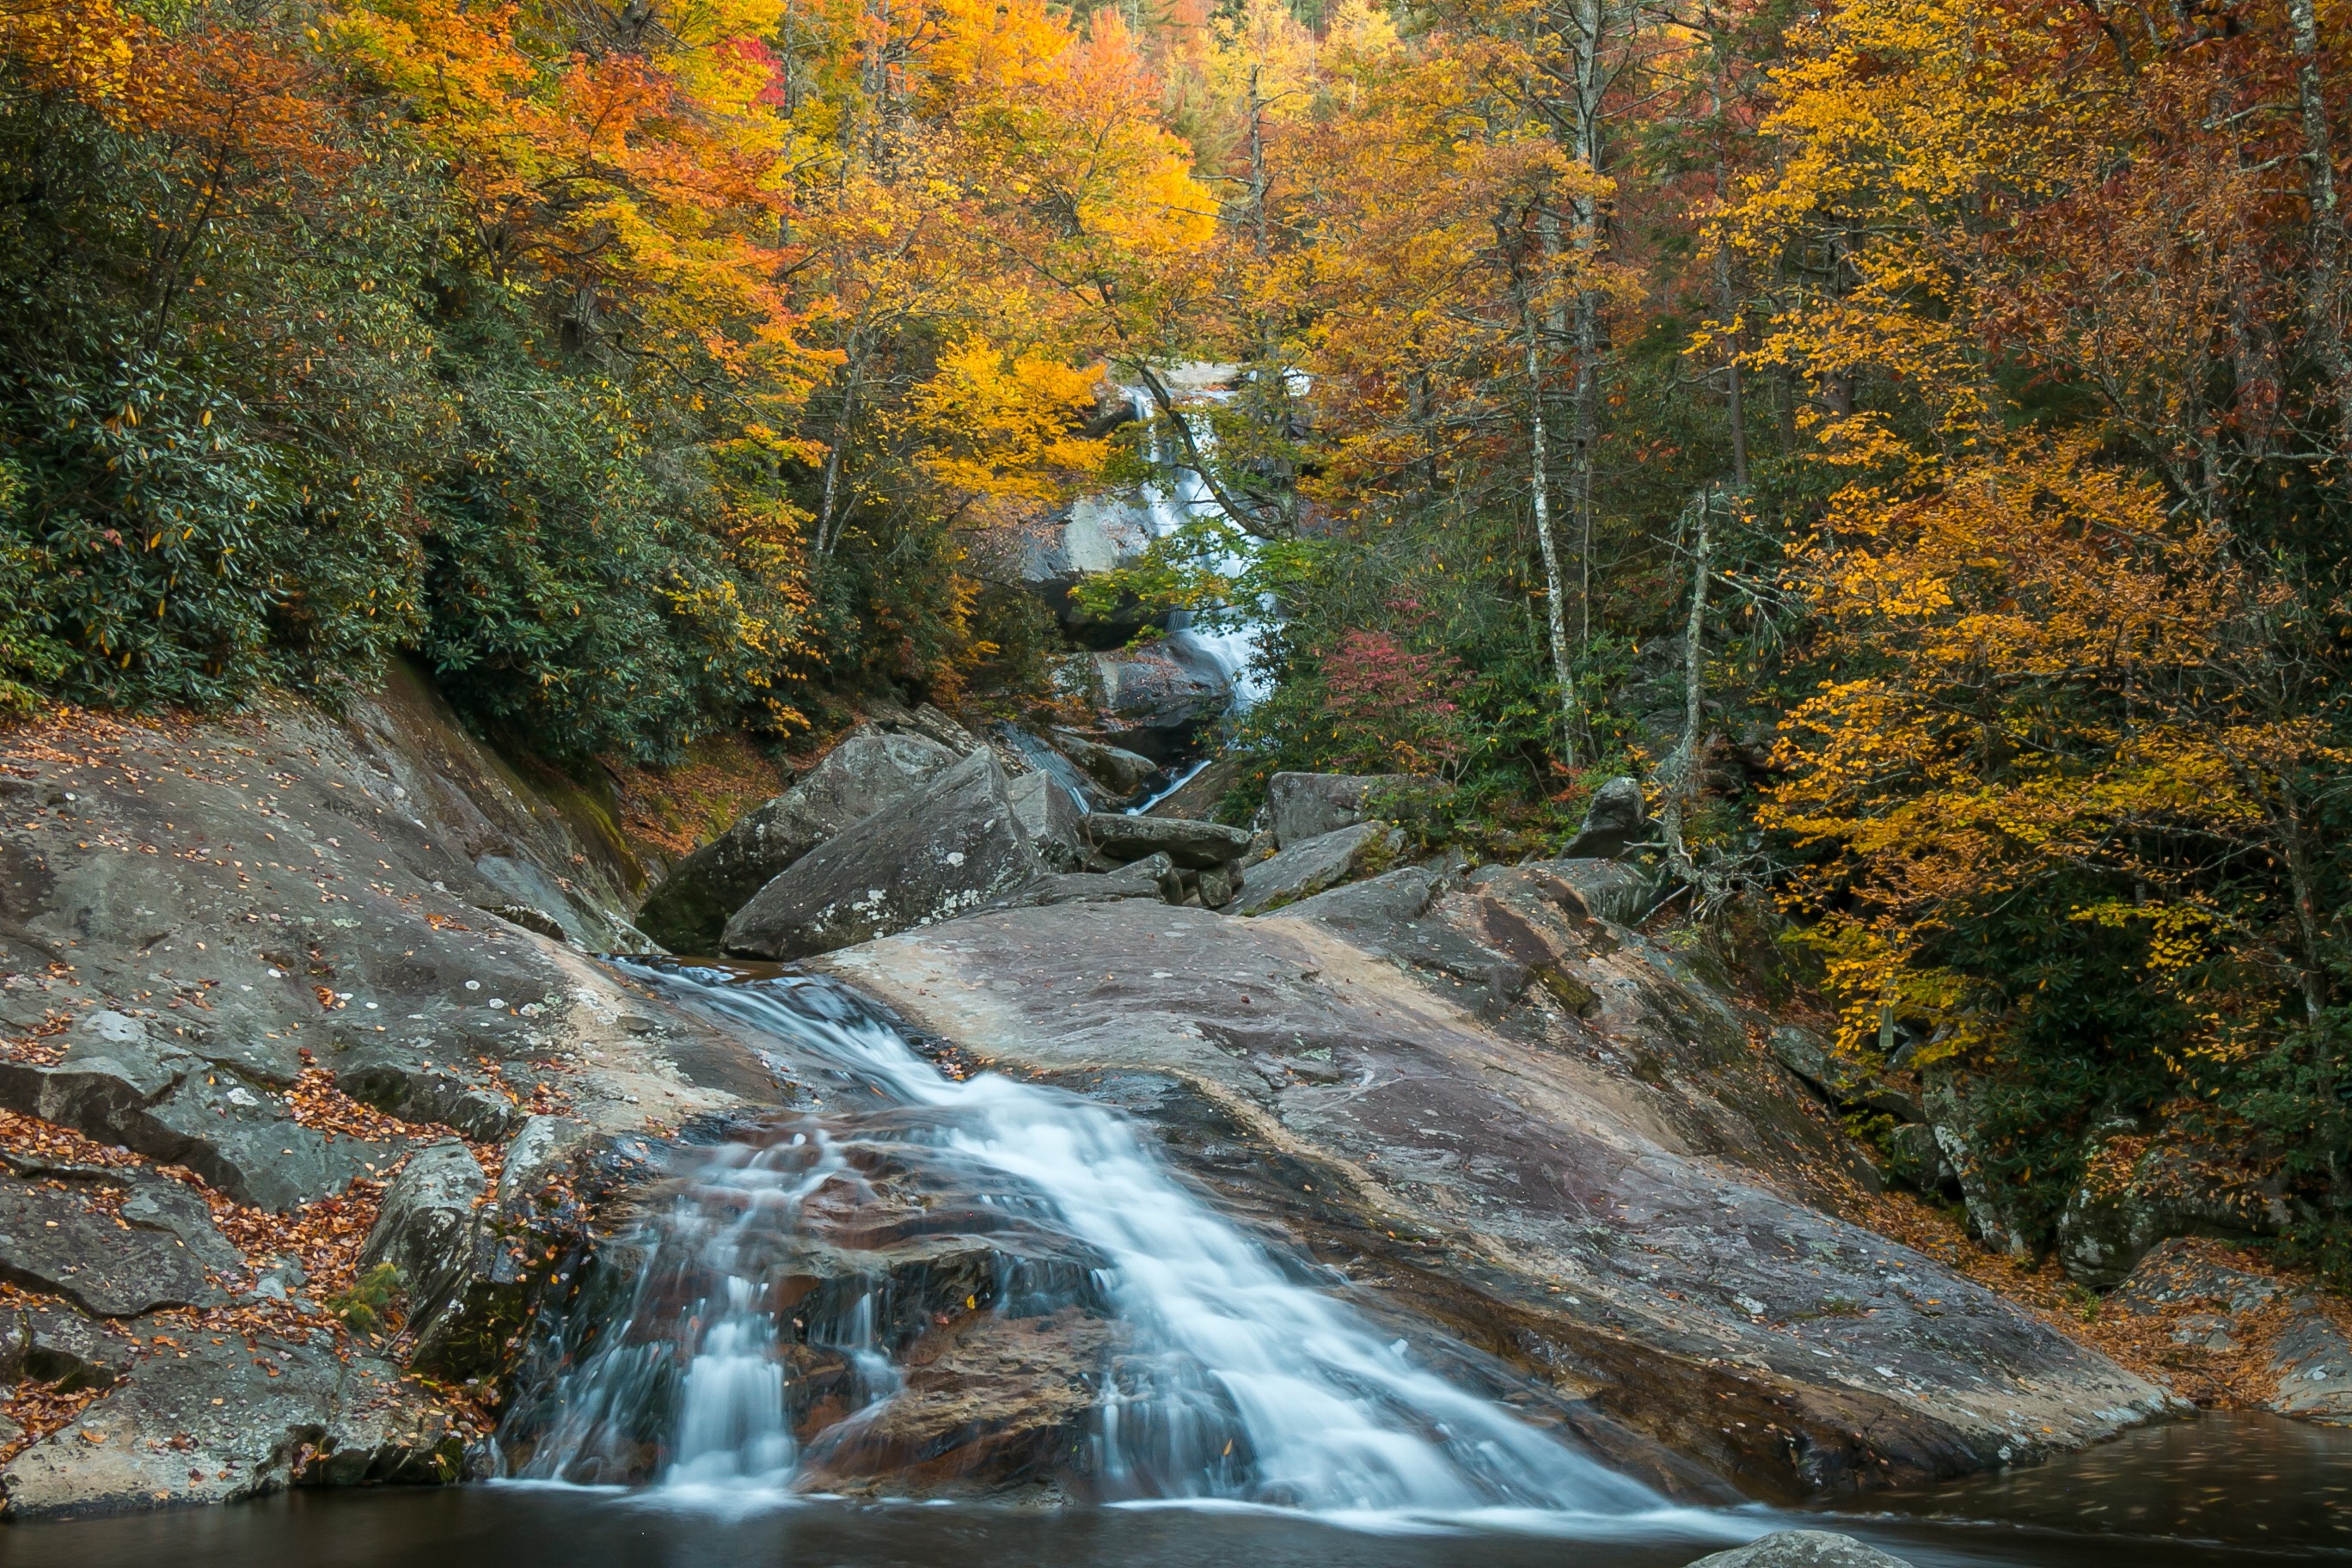 Upper Creek Falls - 2016’s Best Autumn Waterfall.